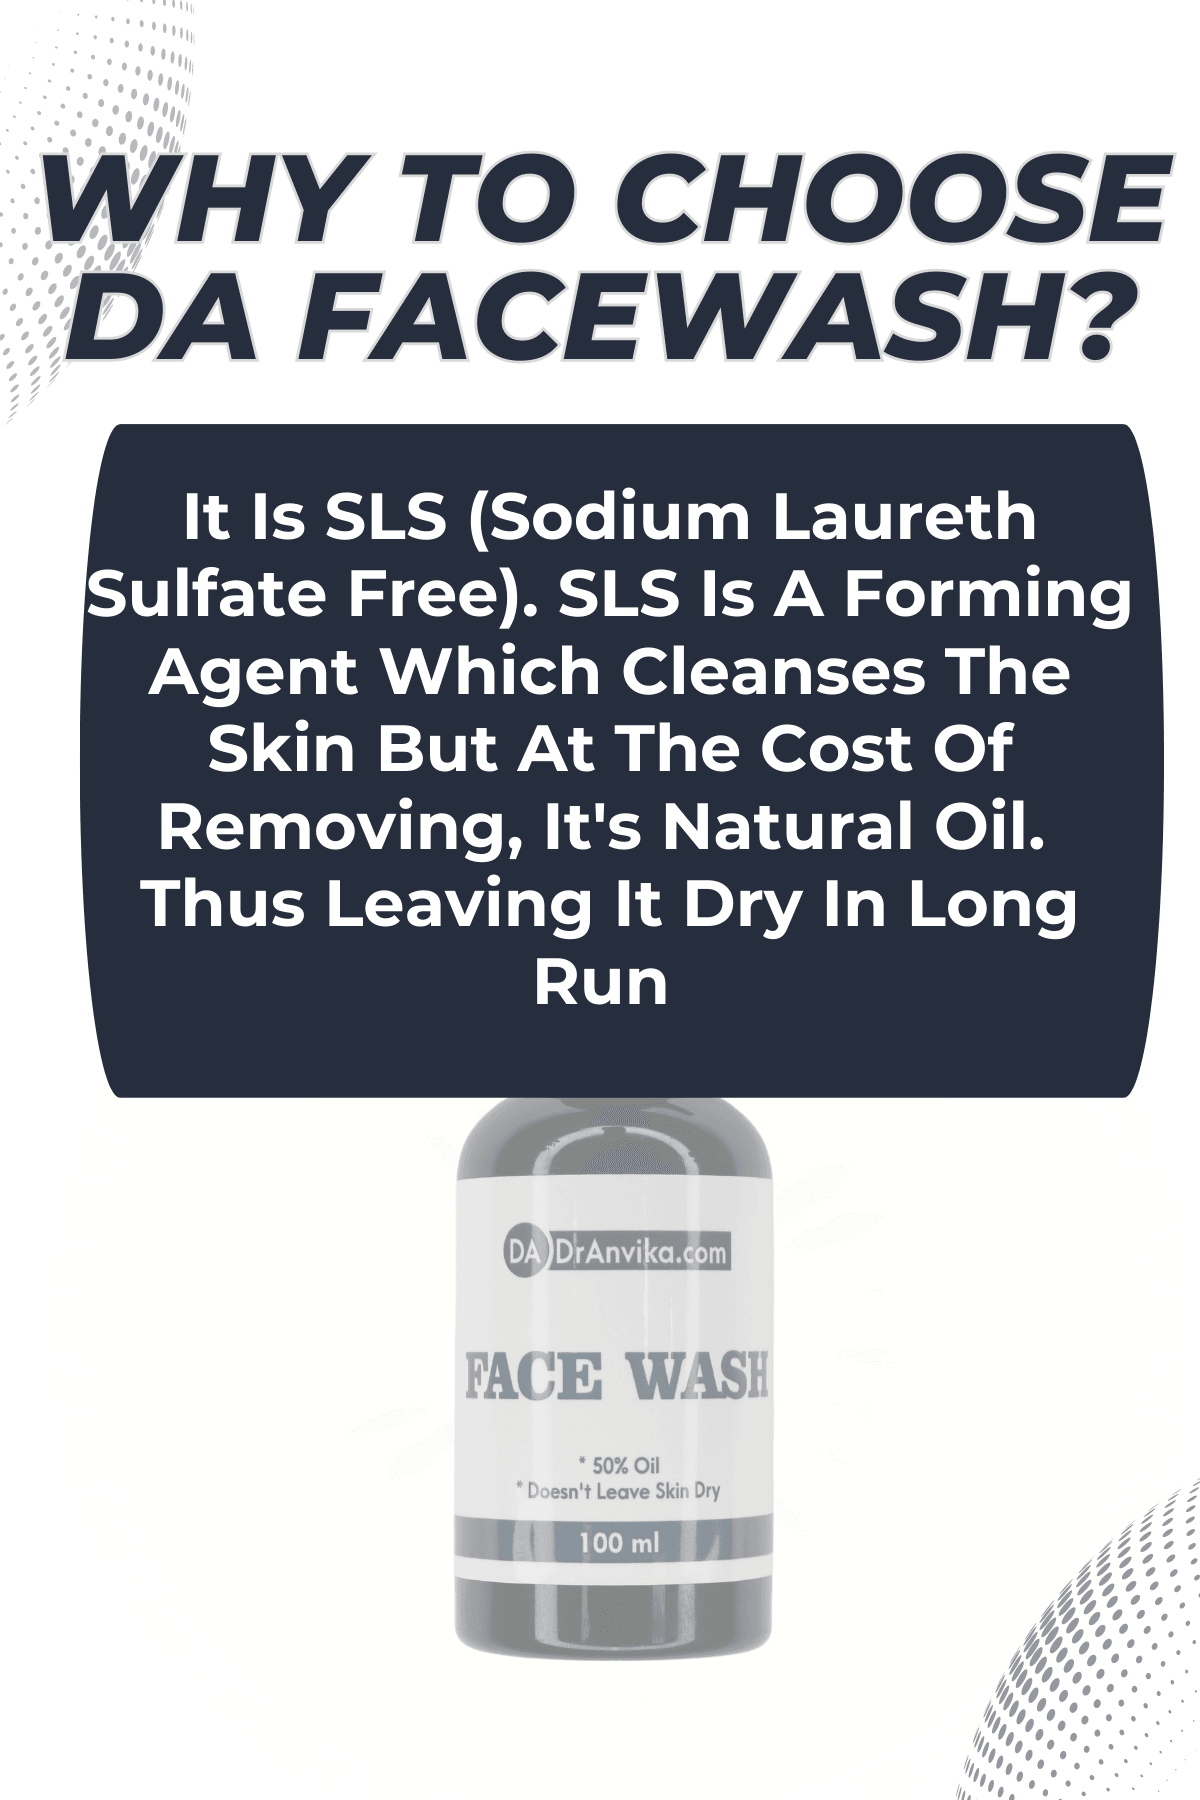 DA face wash for gentle skin 